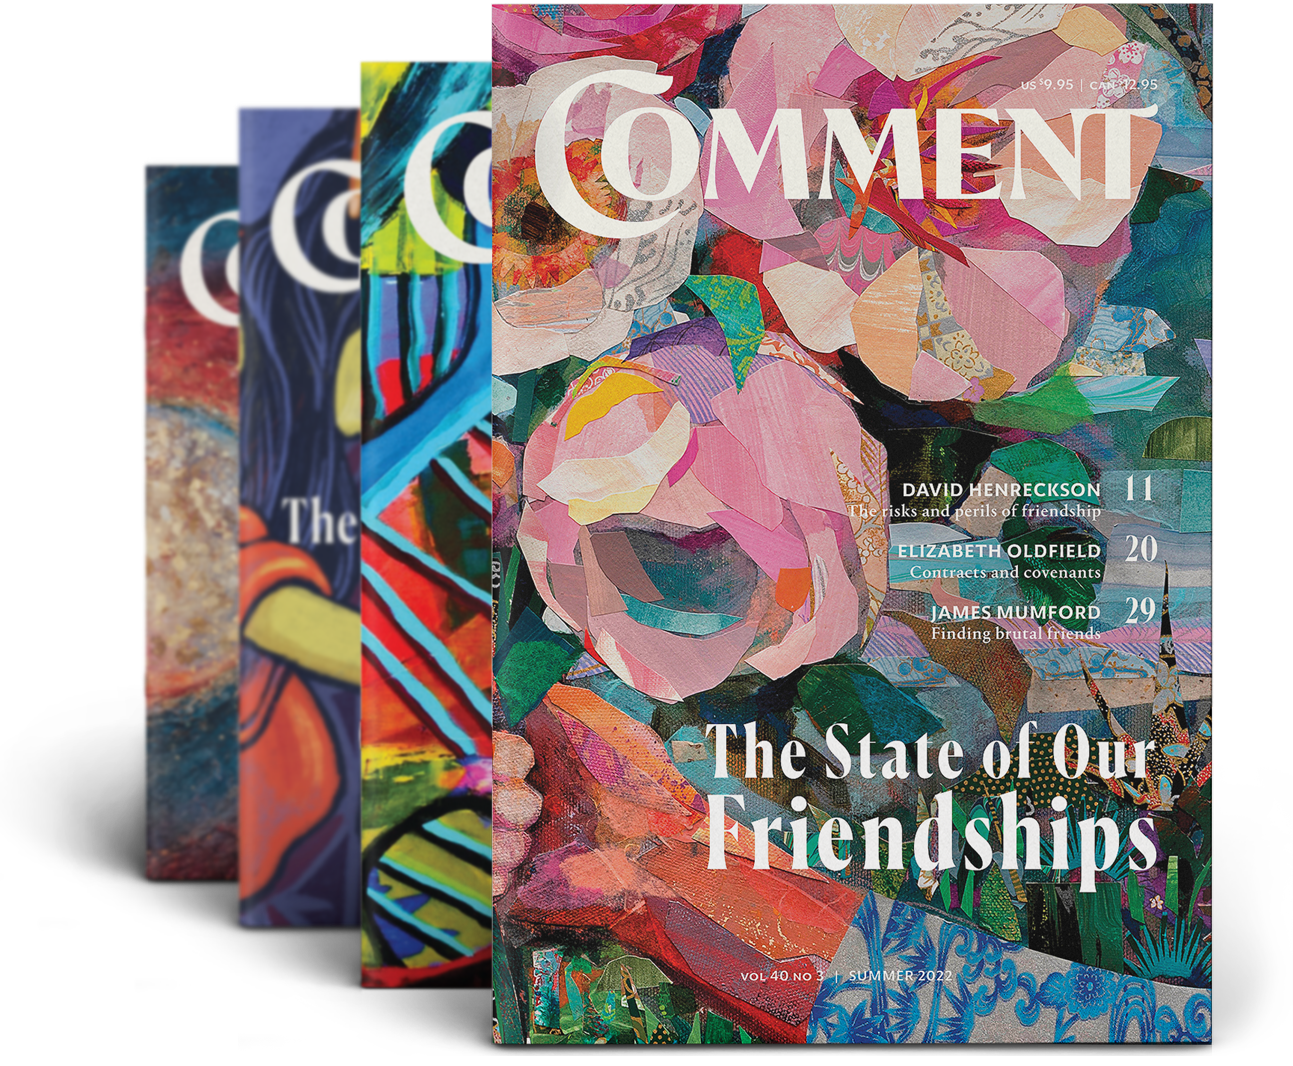 Comment Magazine subscription